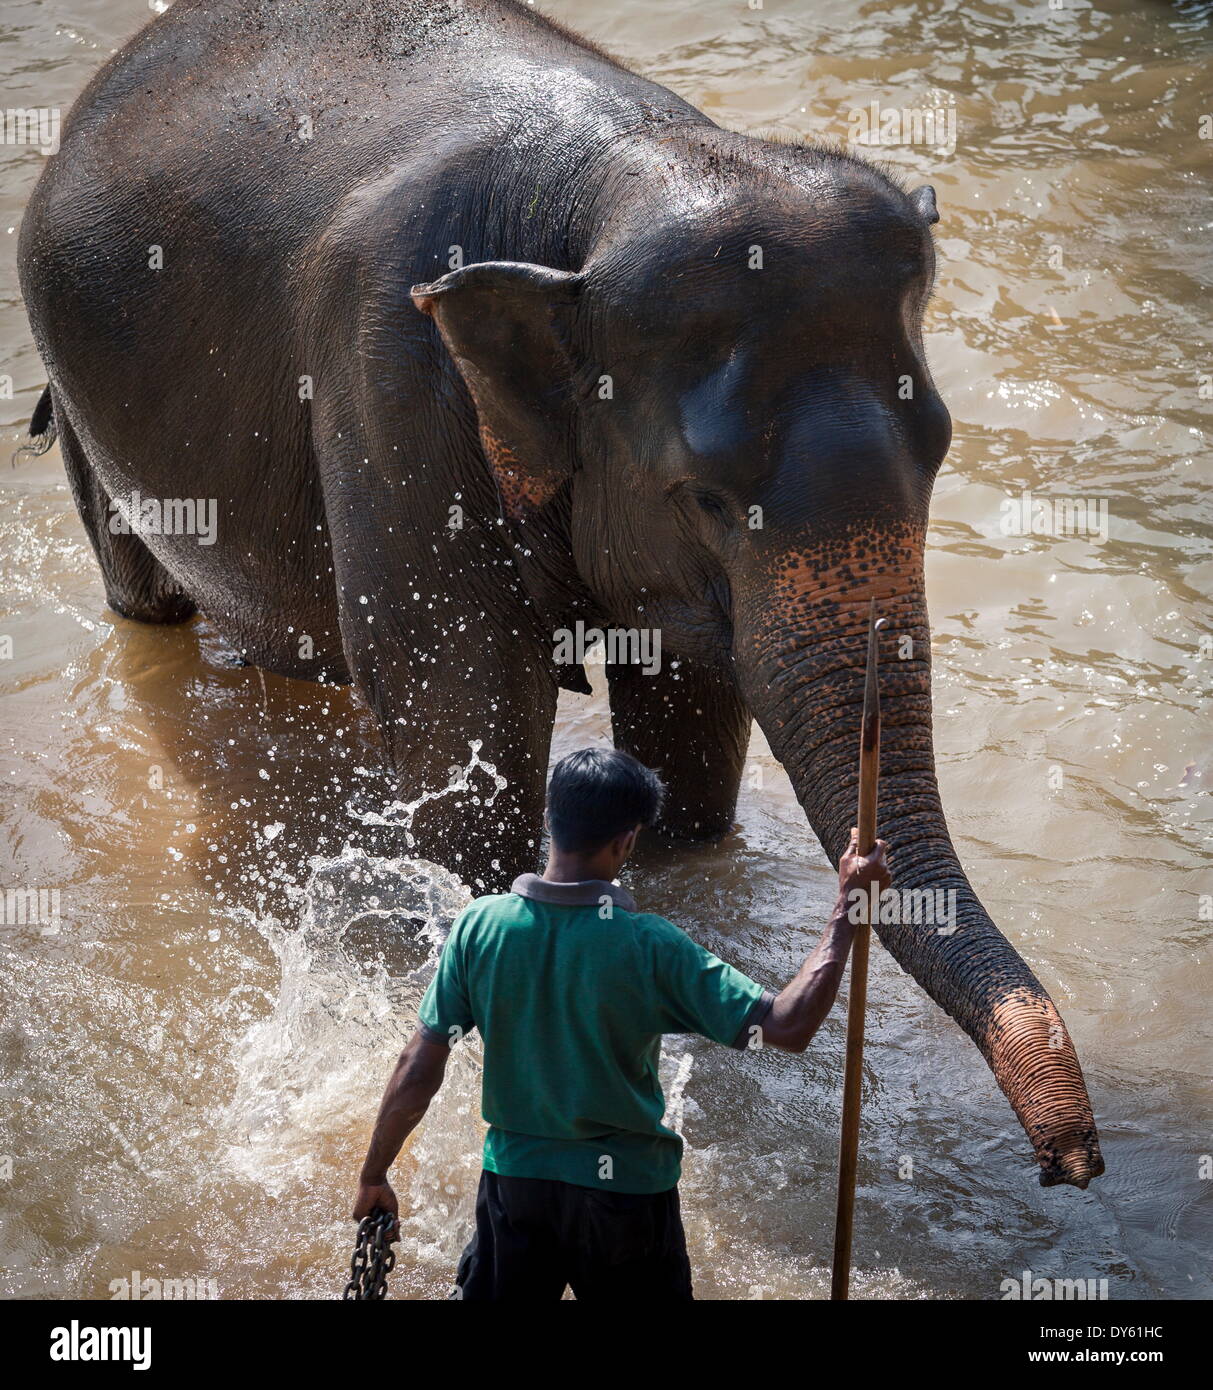 An adult elephant (Elephantidae) washes in the river, Pinnewala Elephant Orphanage, Sri Lanka, Asia Stock Photo